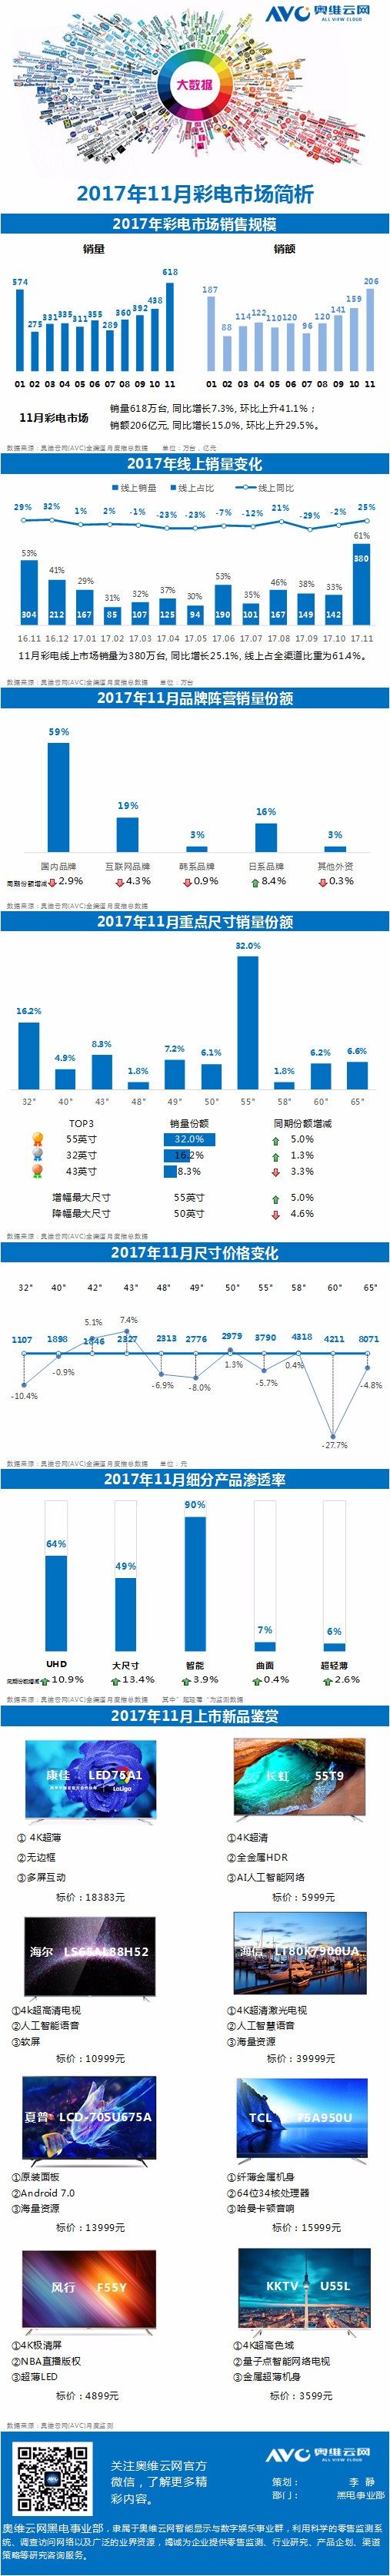 奥维云网发布《2018年11月彩电市场简析》报告